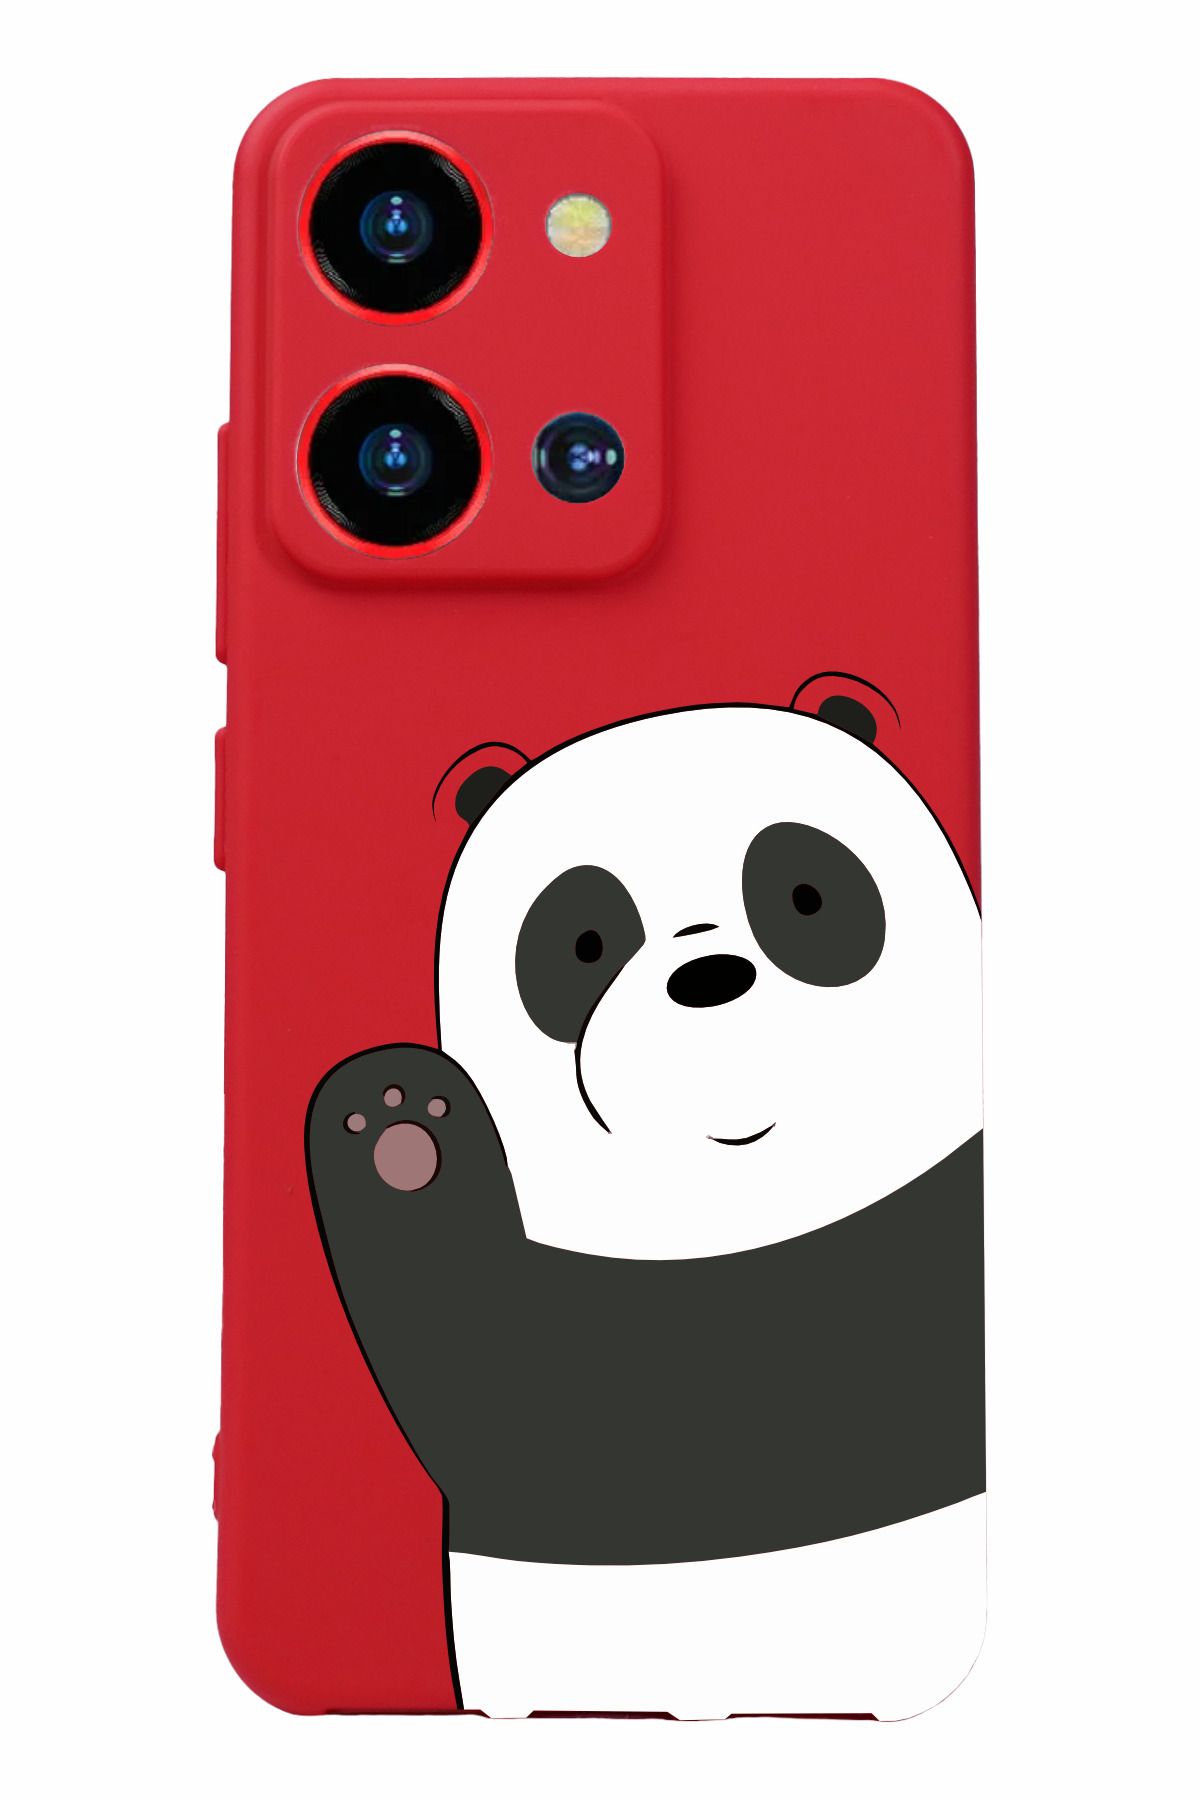 Reeder S19 Max Pro S Zoom Uyumlu Kamera Korumalı ve Tasarımlı Kırmızı Renk Silikon Kılıf